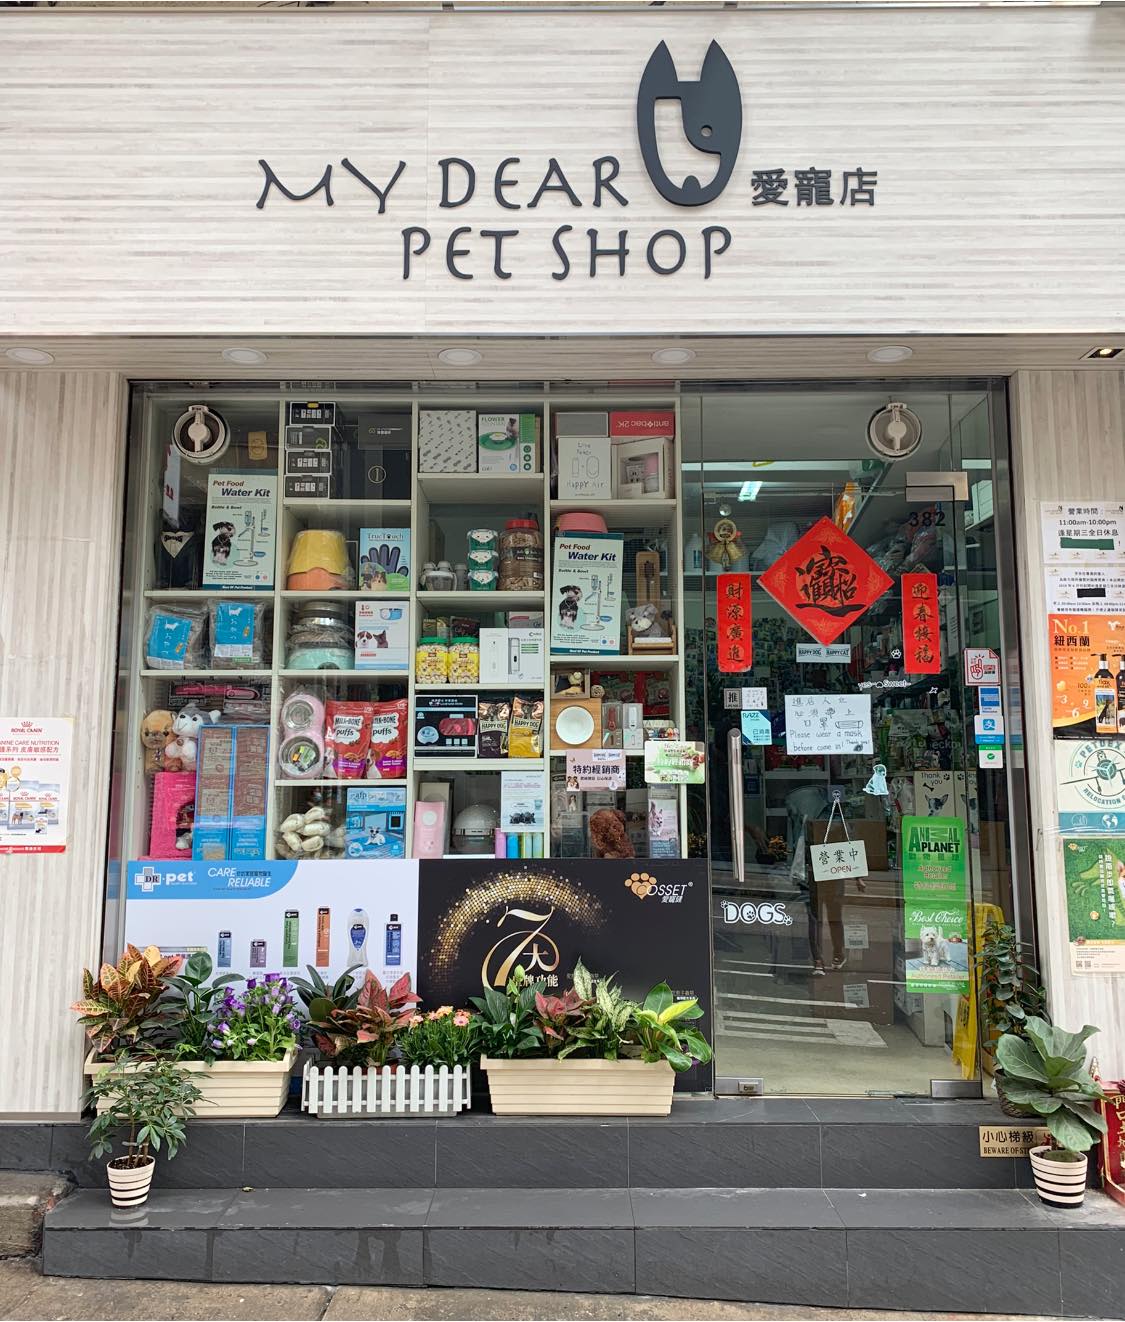 My Dear Pet Shop 愛寵店